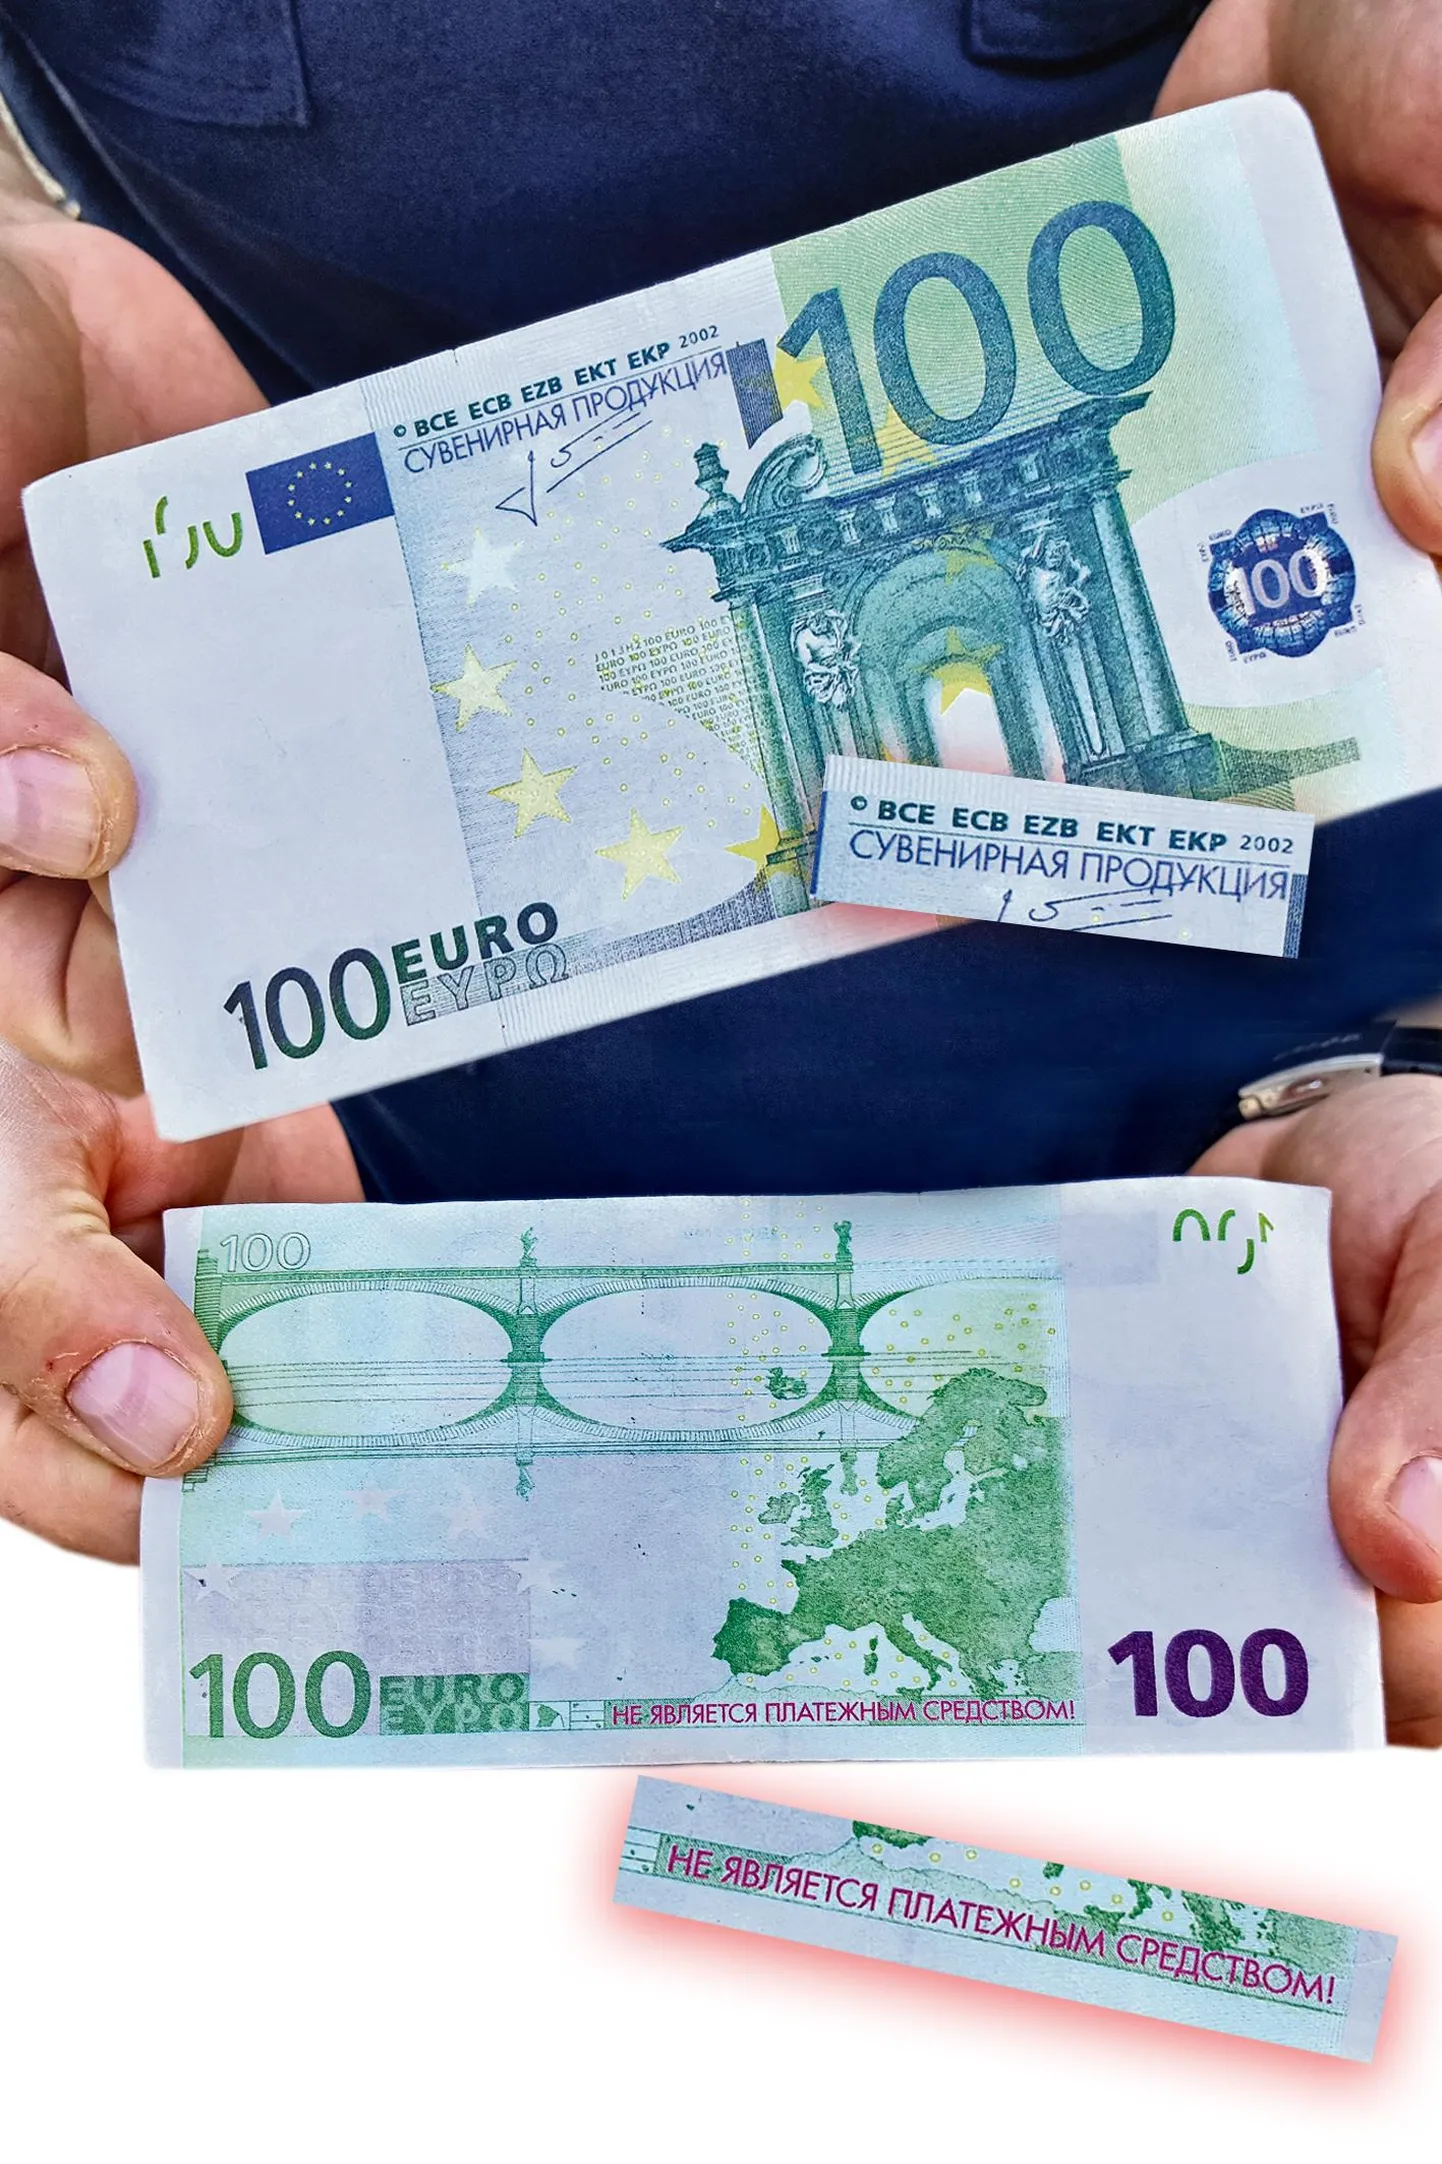 Põltsamaa vallas kasutas tundmatu paar eaka naise tüssamiseks 100-eurost kupüüri meenutavat paberitükki, millele trükitud venekeelsed kirjad ütlevad otsesõnu, et see on suveniirraha.